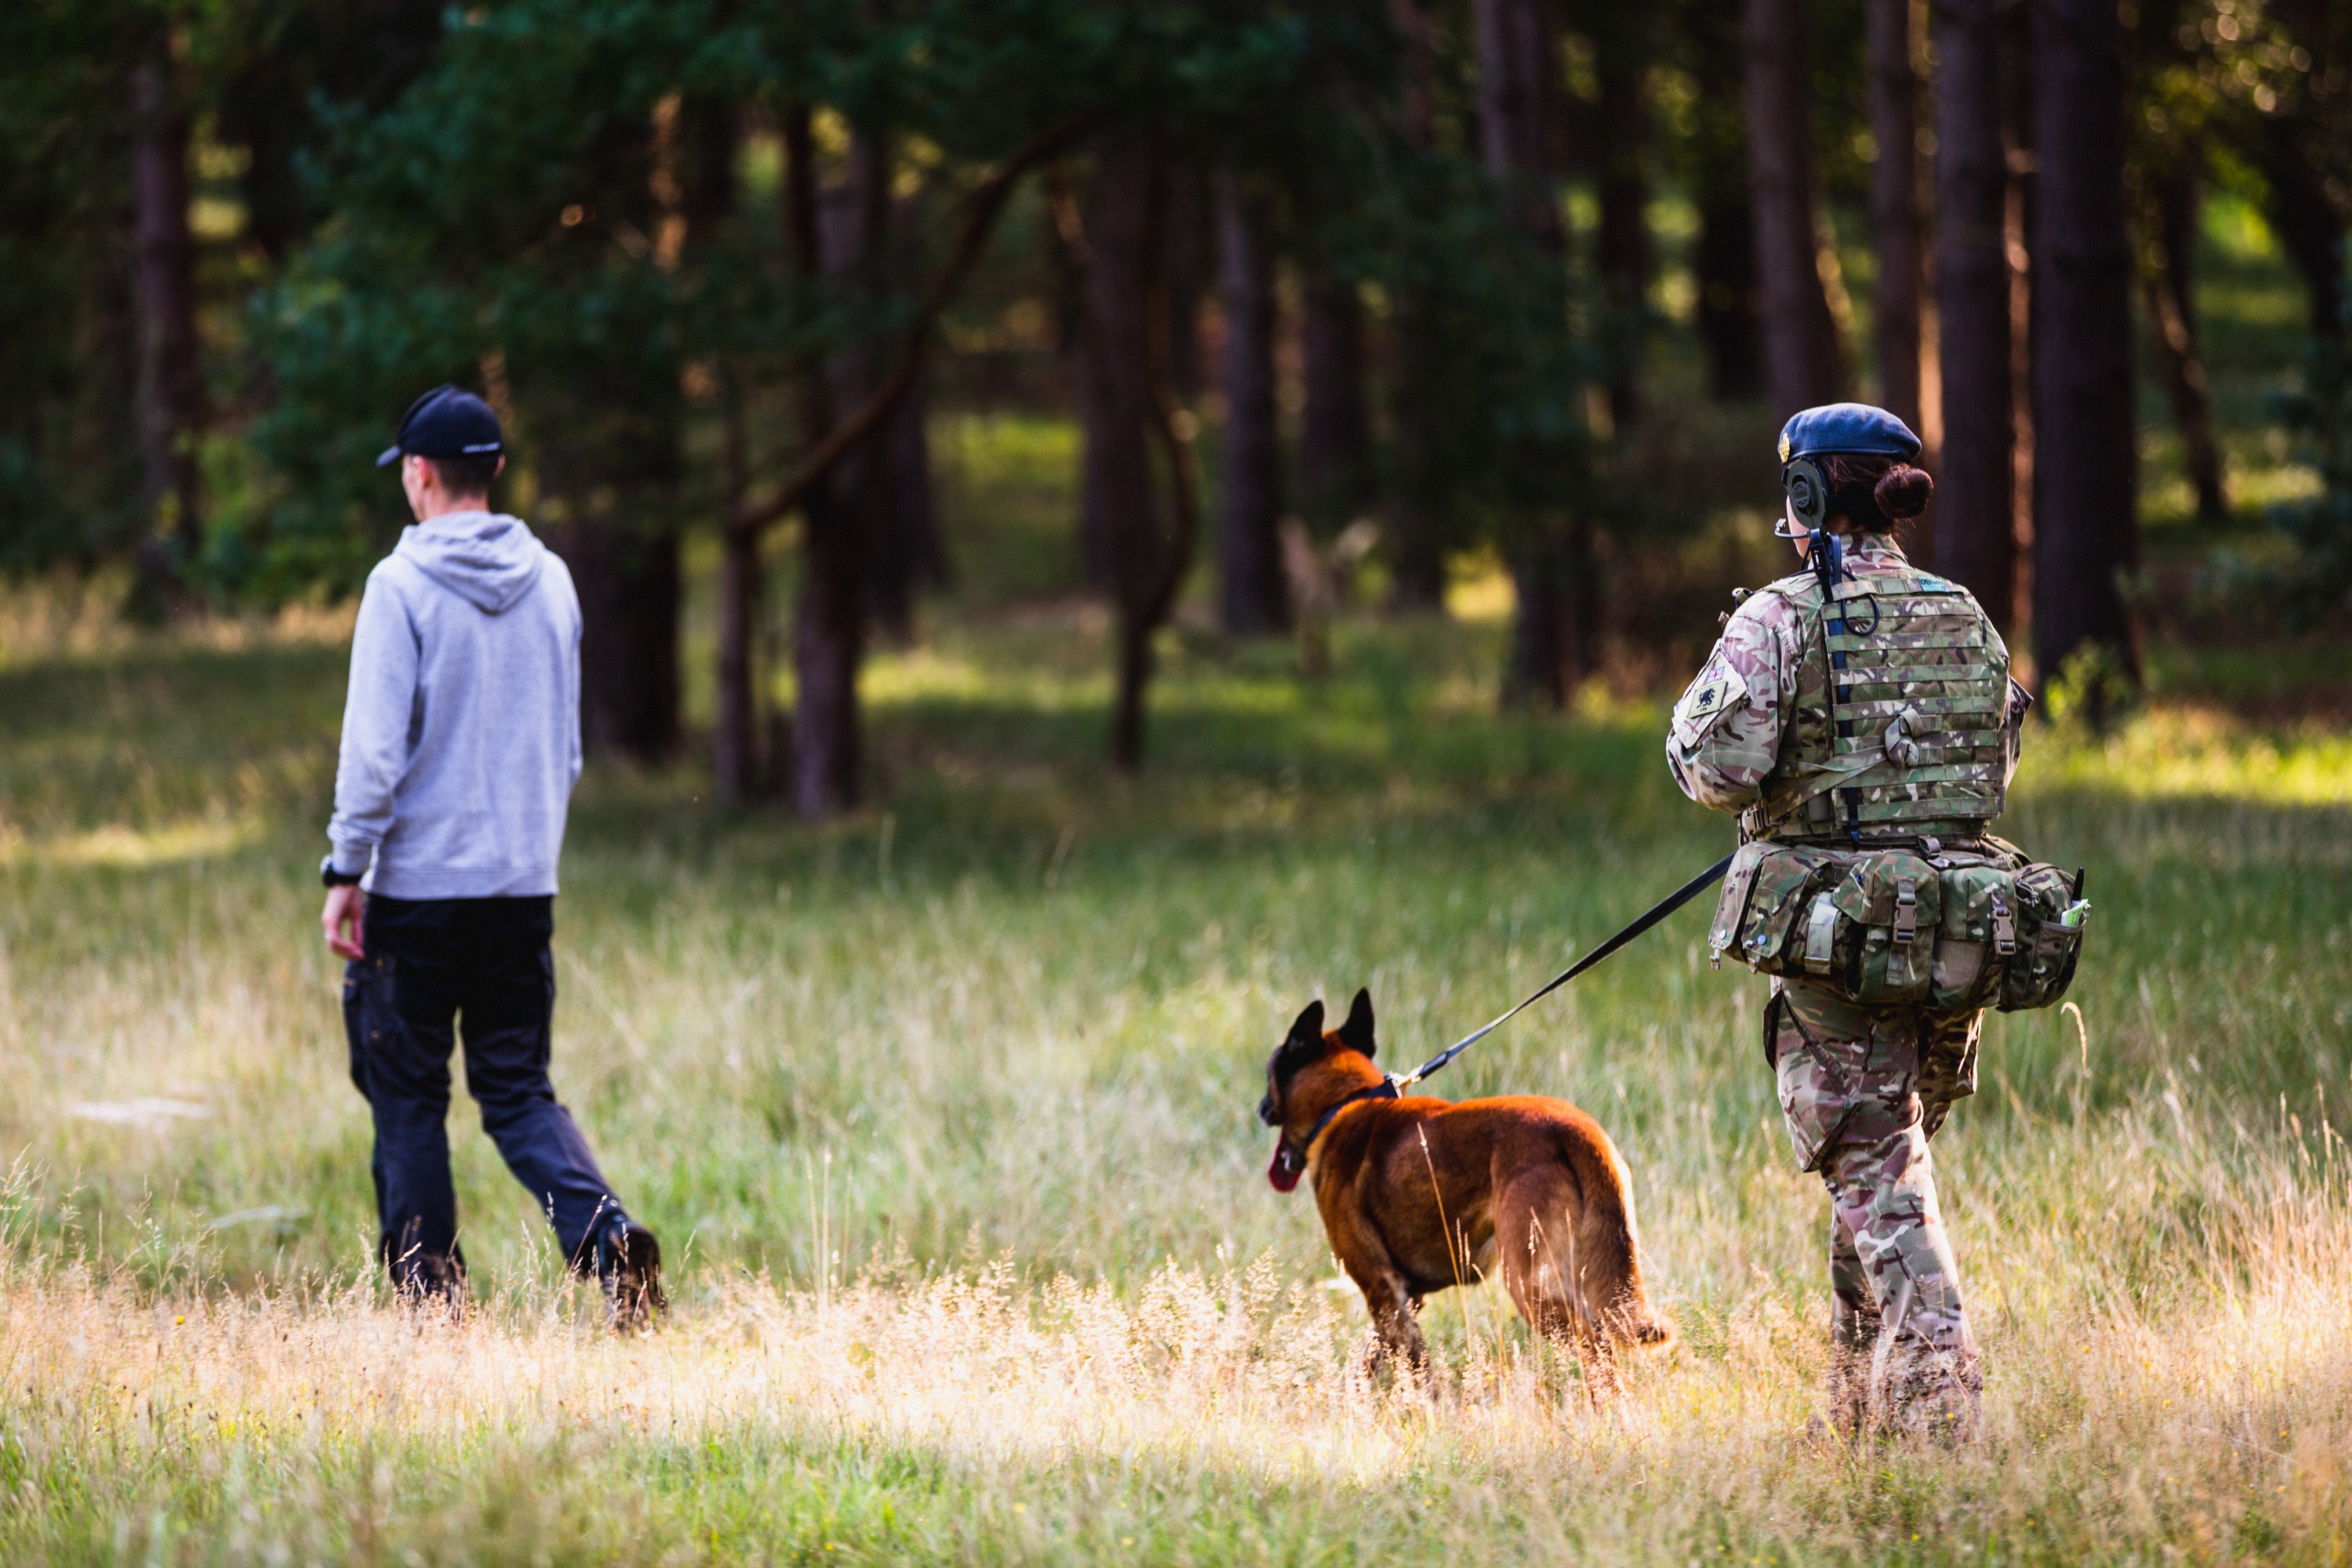 RAF Police walks dog in field.